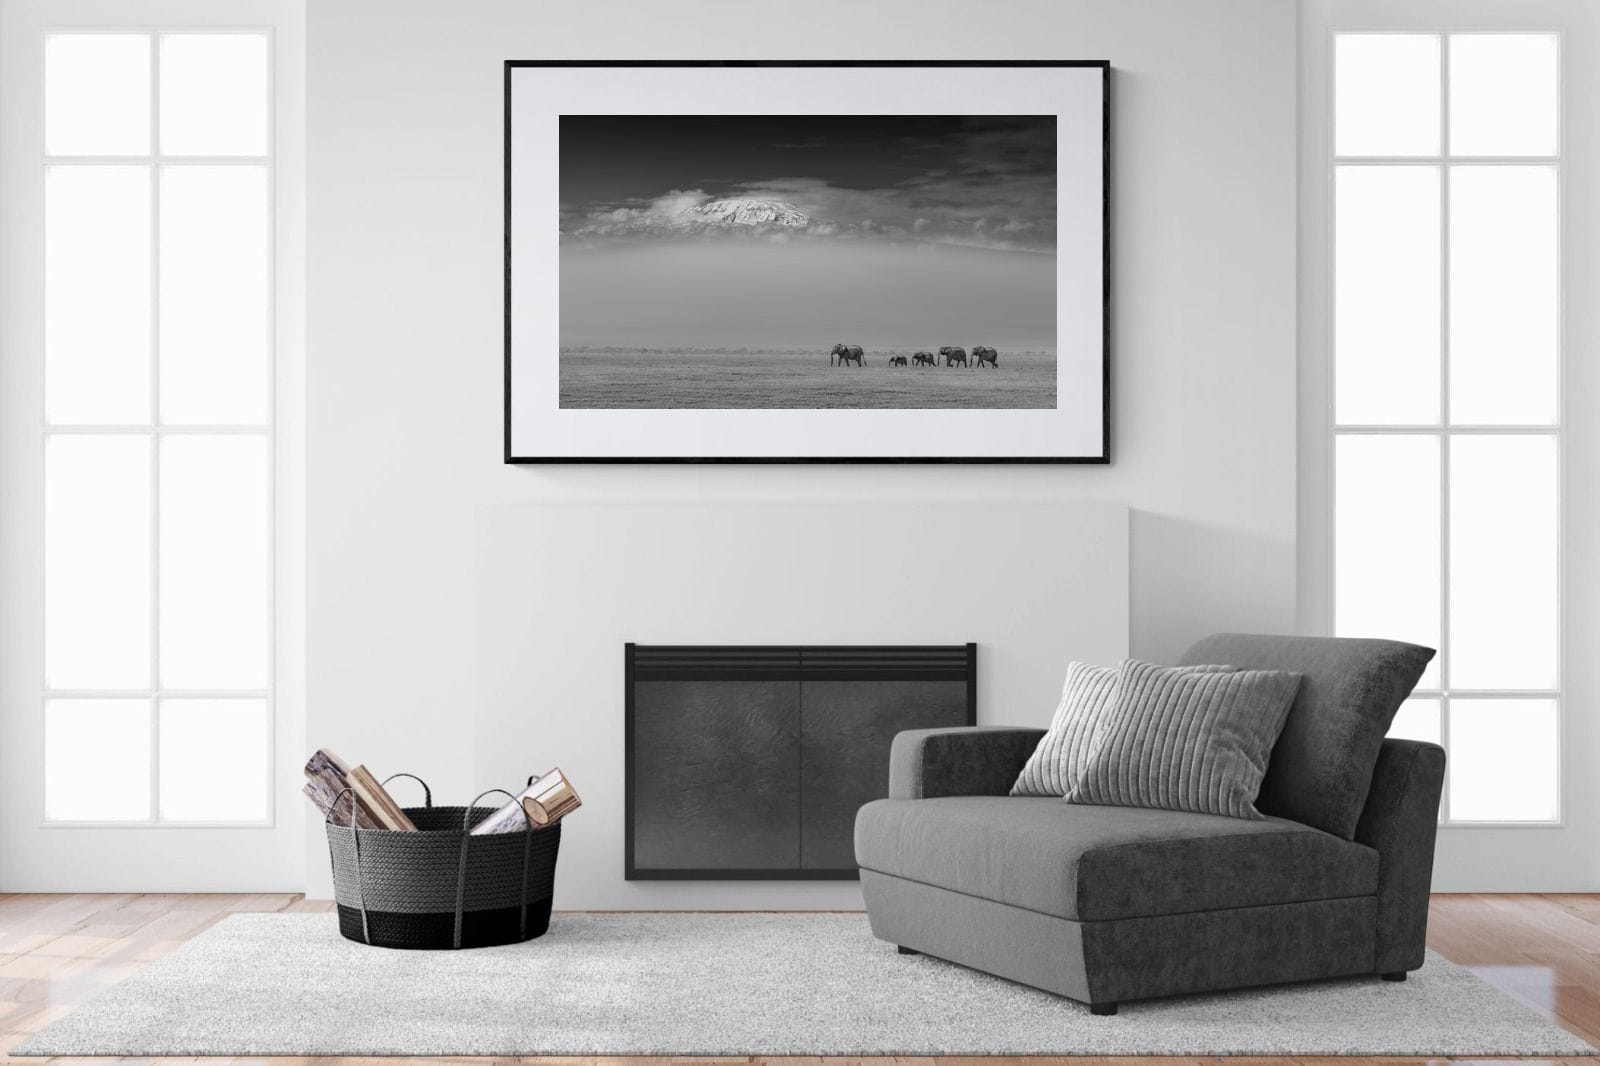 Mountain Elephants-Wall_Art-150 x 100cm-Framed Print-Black-Pixalot